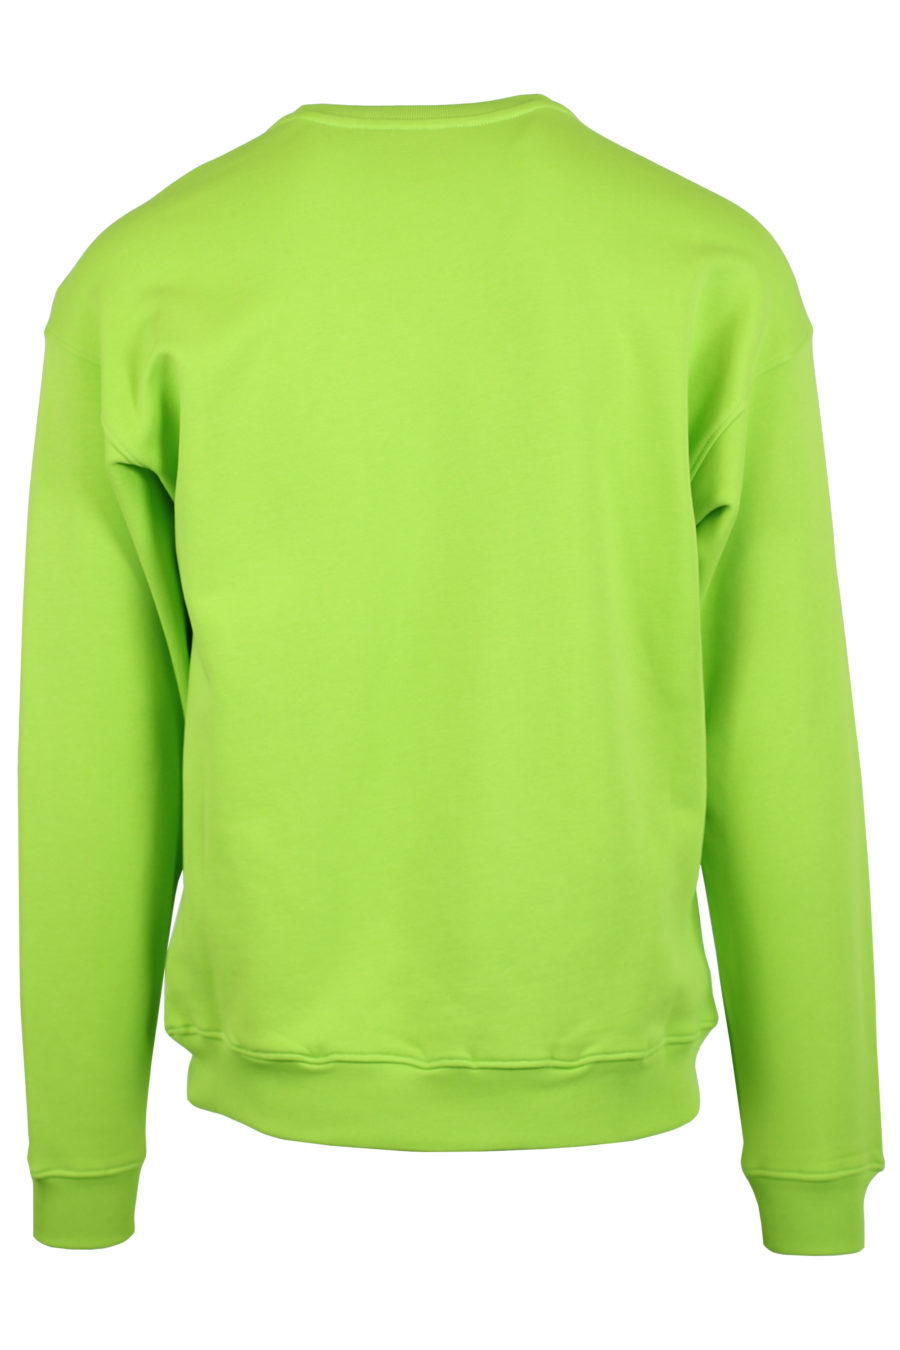 Camisola verde Fluor com logótipo grande - IMG 0907